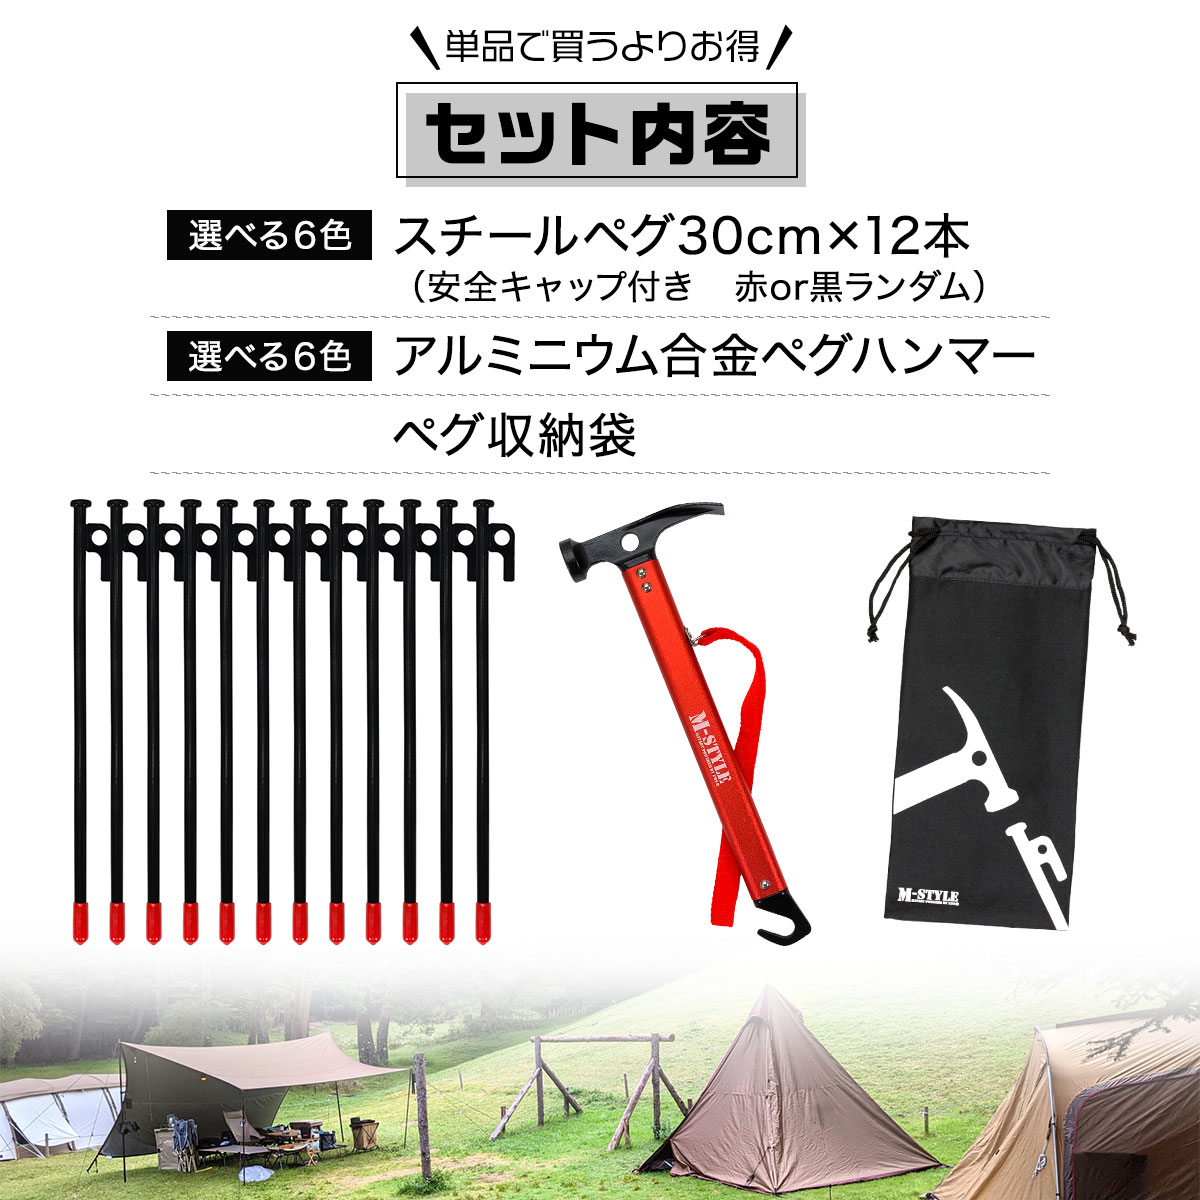 最安値】 30cm 10本セット スチールペグ ペグ キャンプ テント風対策